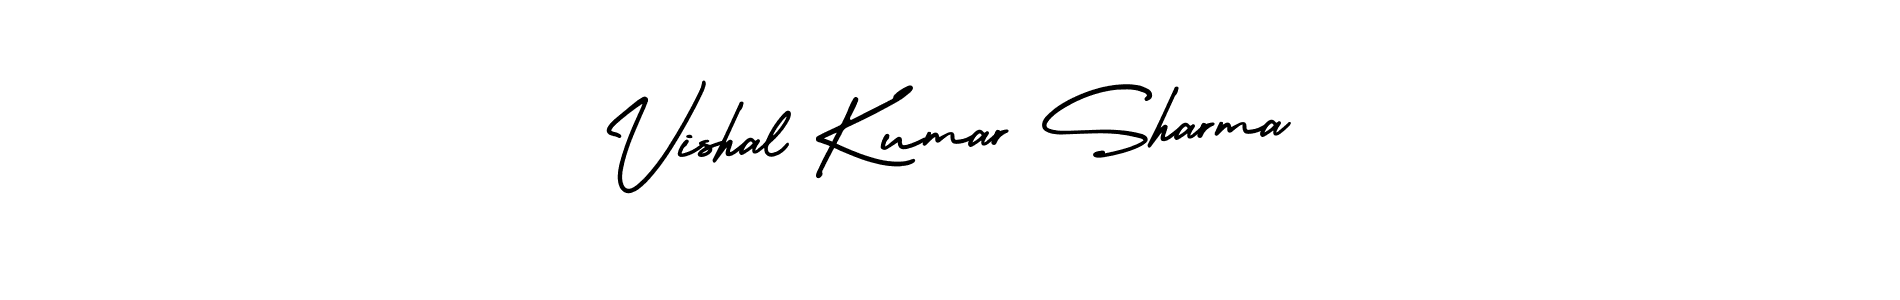 Vishal Kumar Sharma stylish signature style. Best Handwritten Sign (AmerikaSignatureDemo-Regular) for my name. Handwritten Signature Collection Ideas for my name Vishal Kumar Sharma. Vishal Kumar Sharma signature style 3 images and pictures png